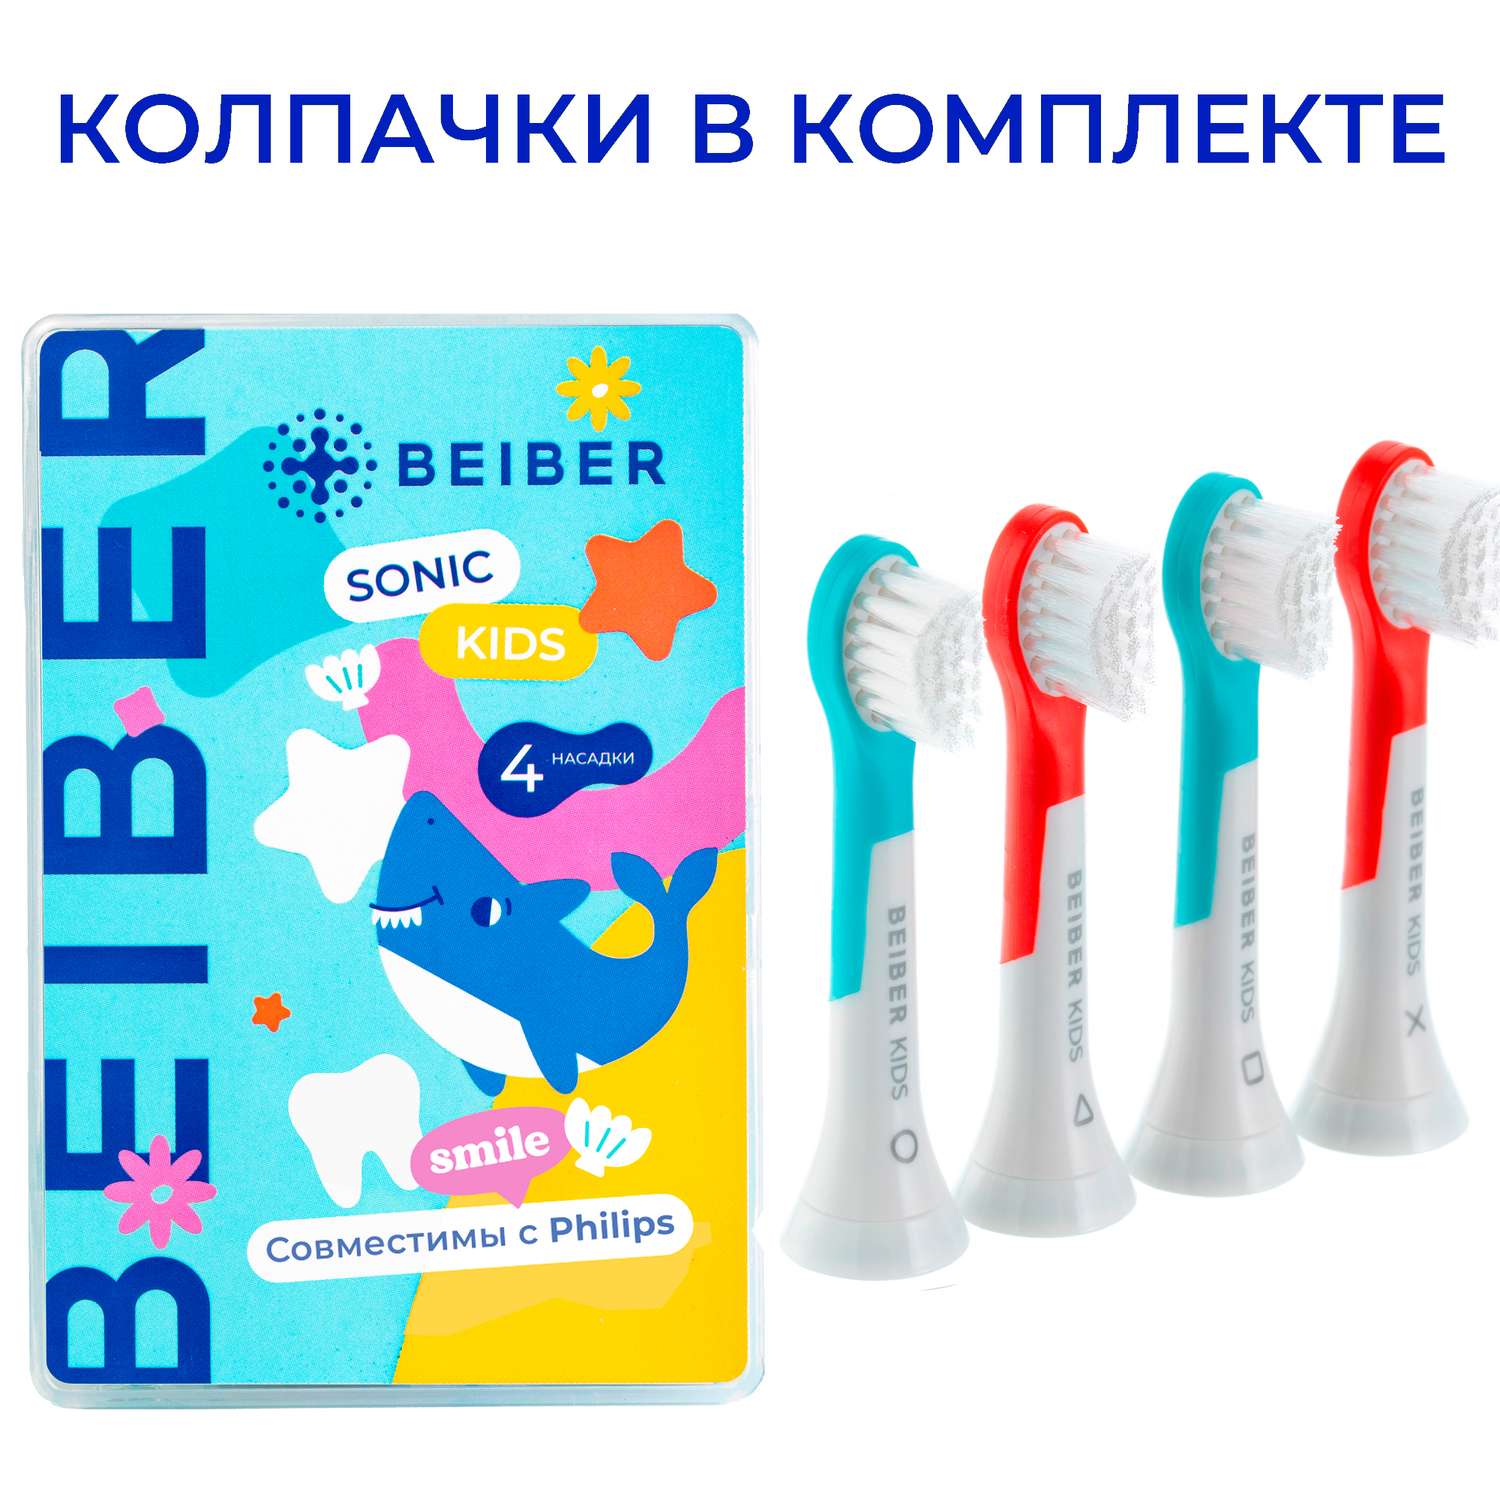 Насадка на зубную щетку BEIBER совместимо с Philips kids 4 шт - фото 1